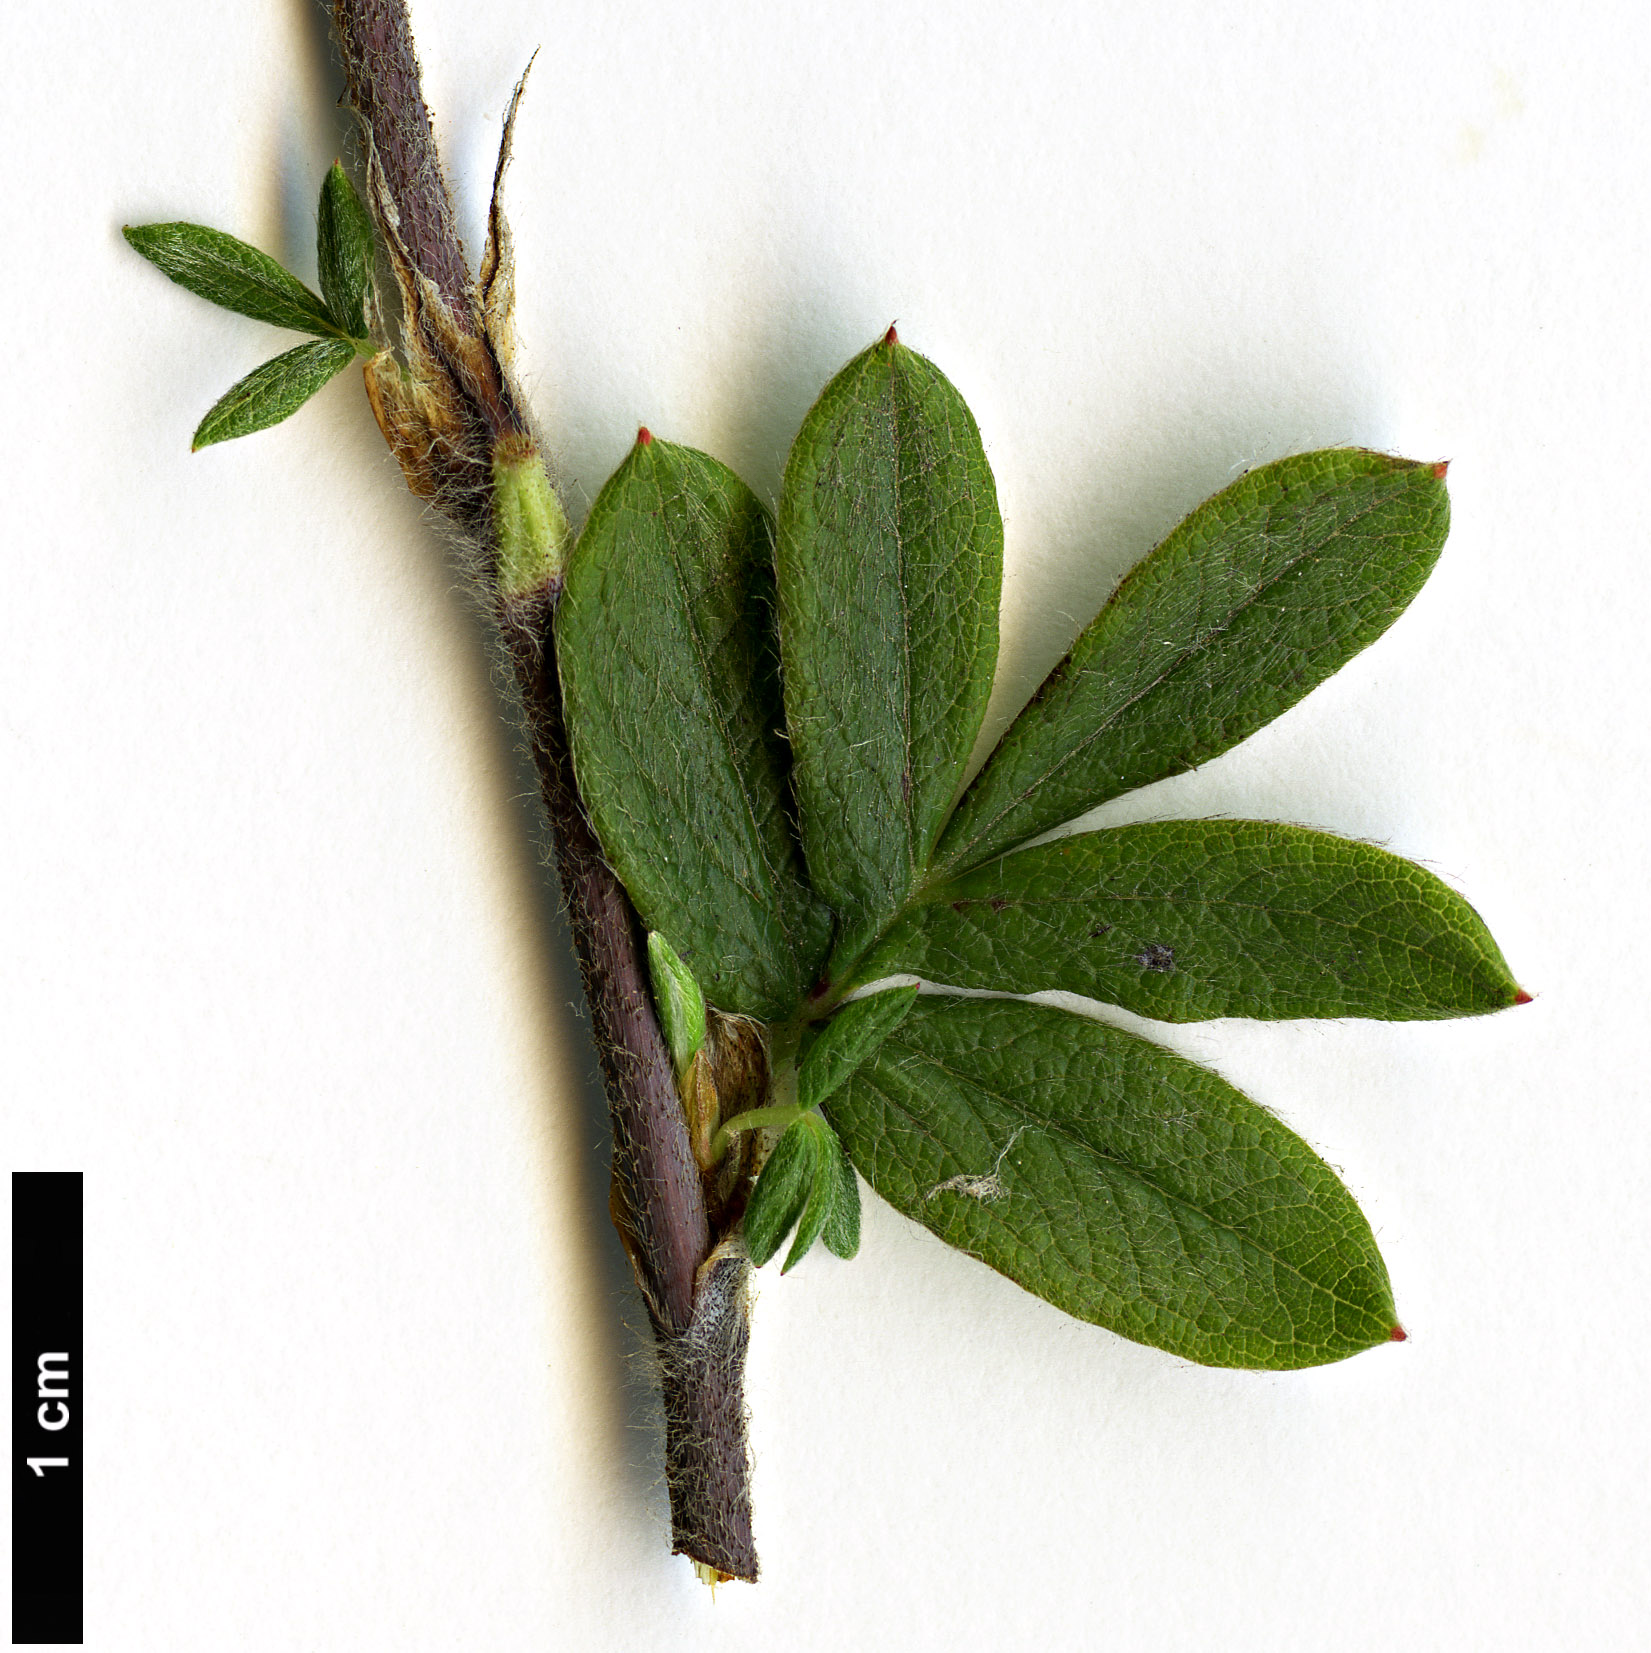 High resolution image: Family: Rosaceae - Genus: Potentilla - Taxon: fruticosa